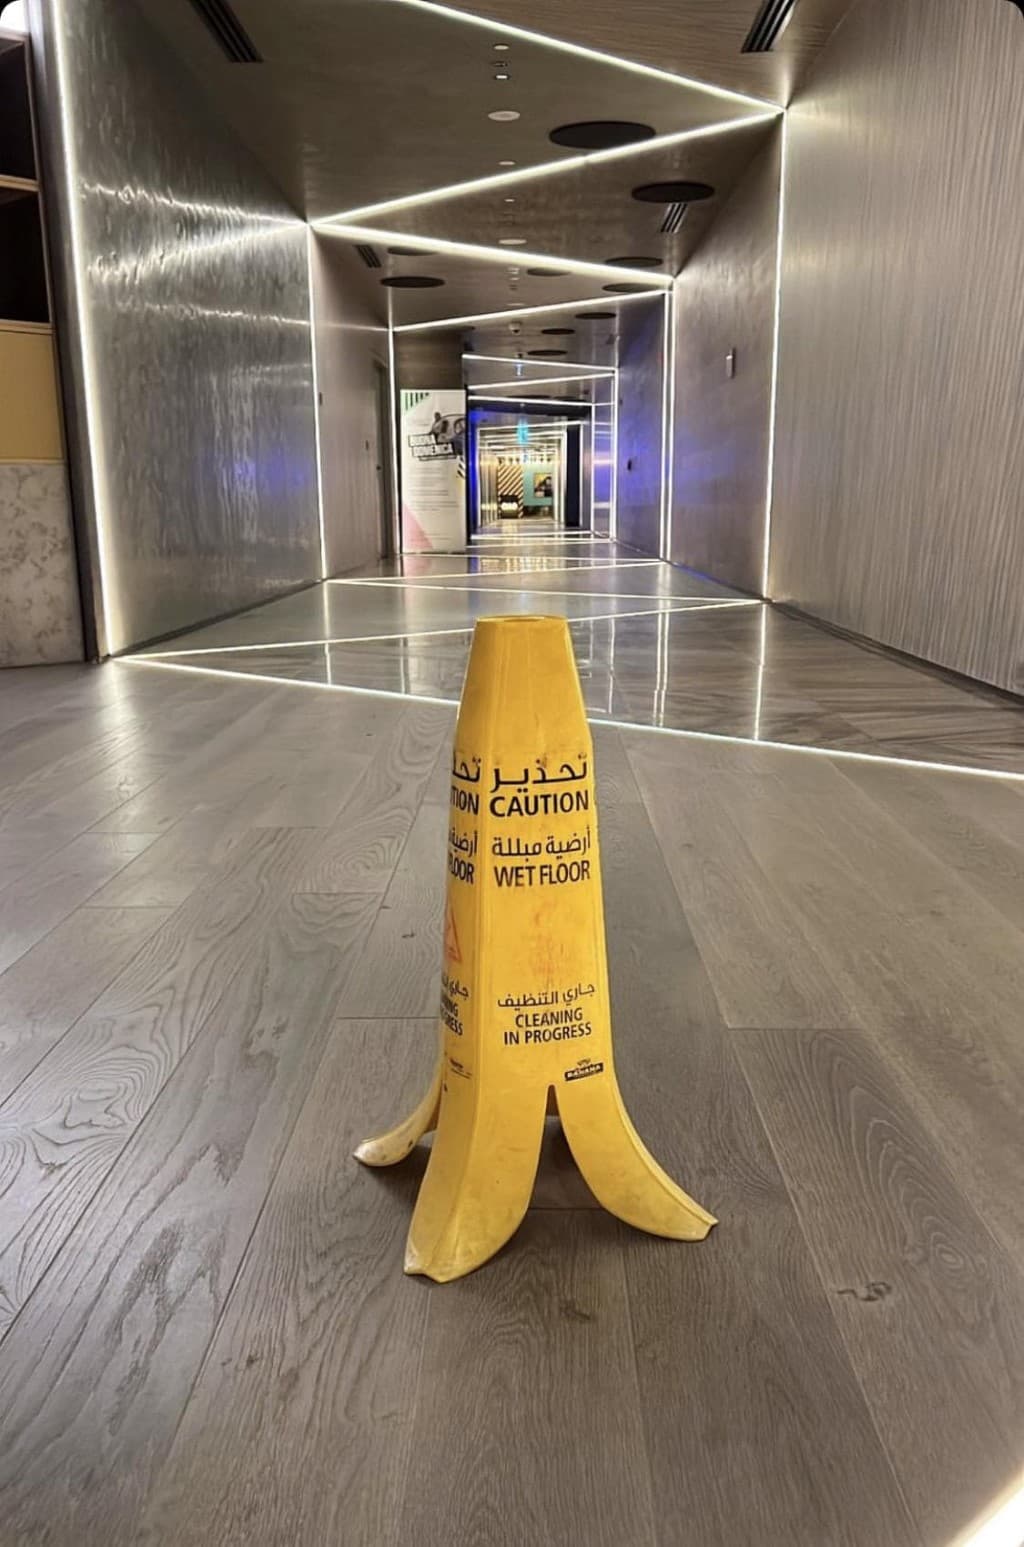 piso mojado signo de banana